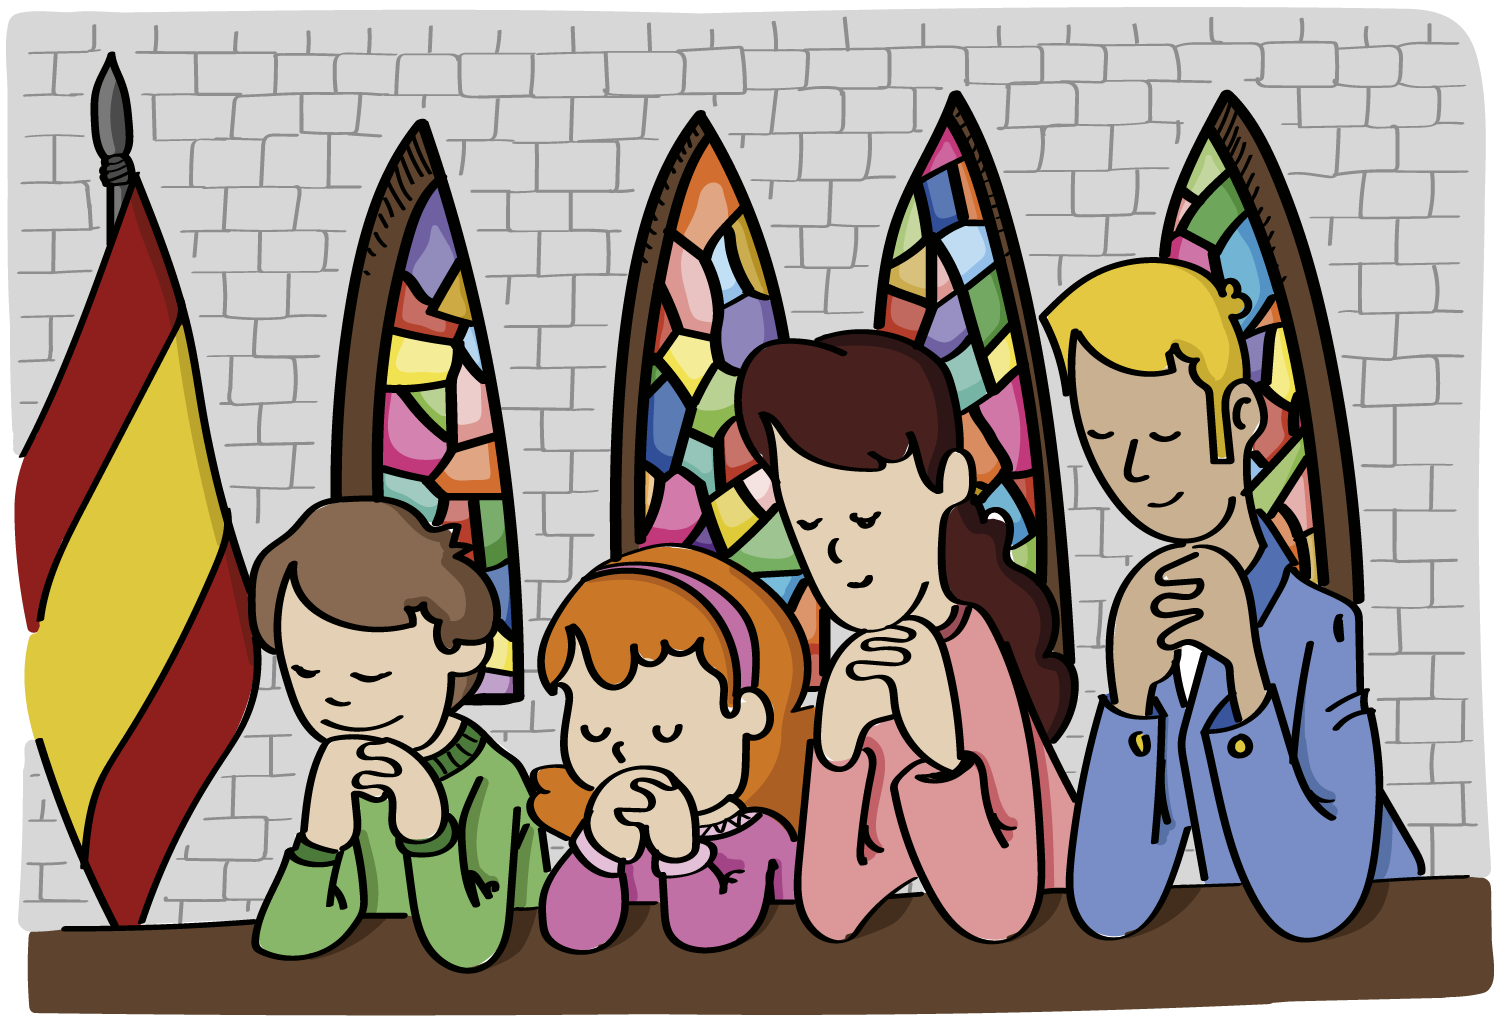 Niños rezando